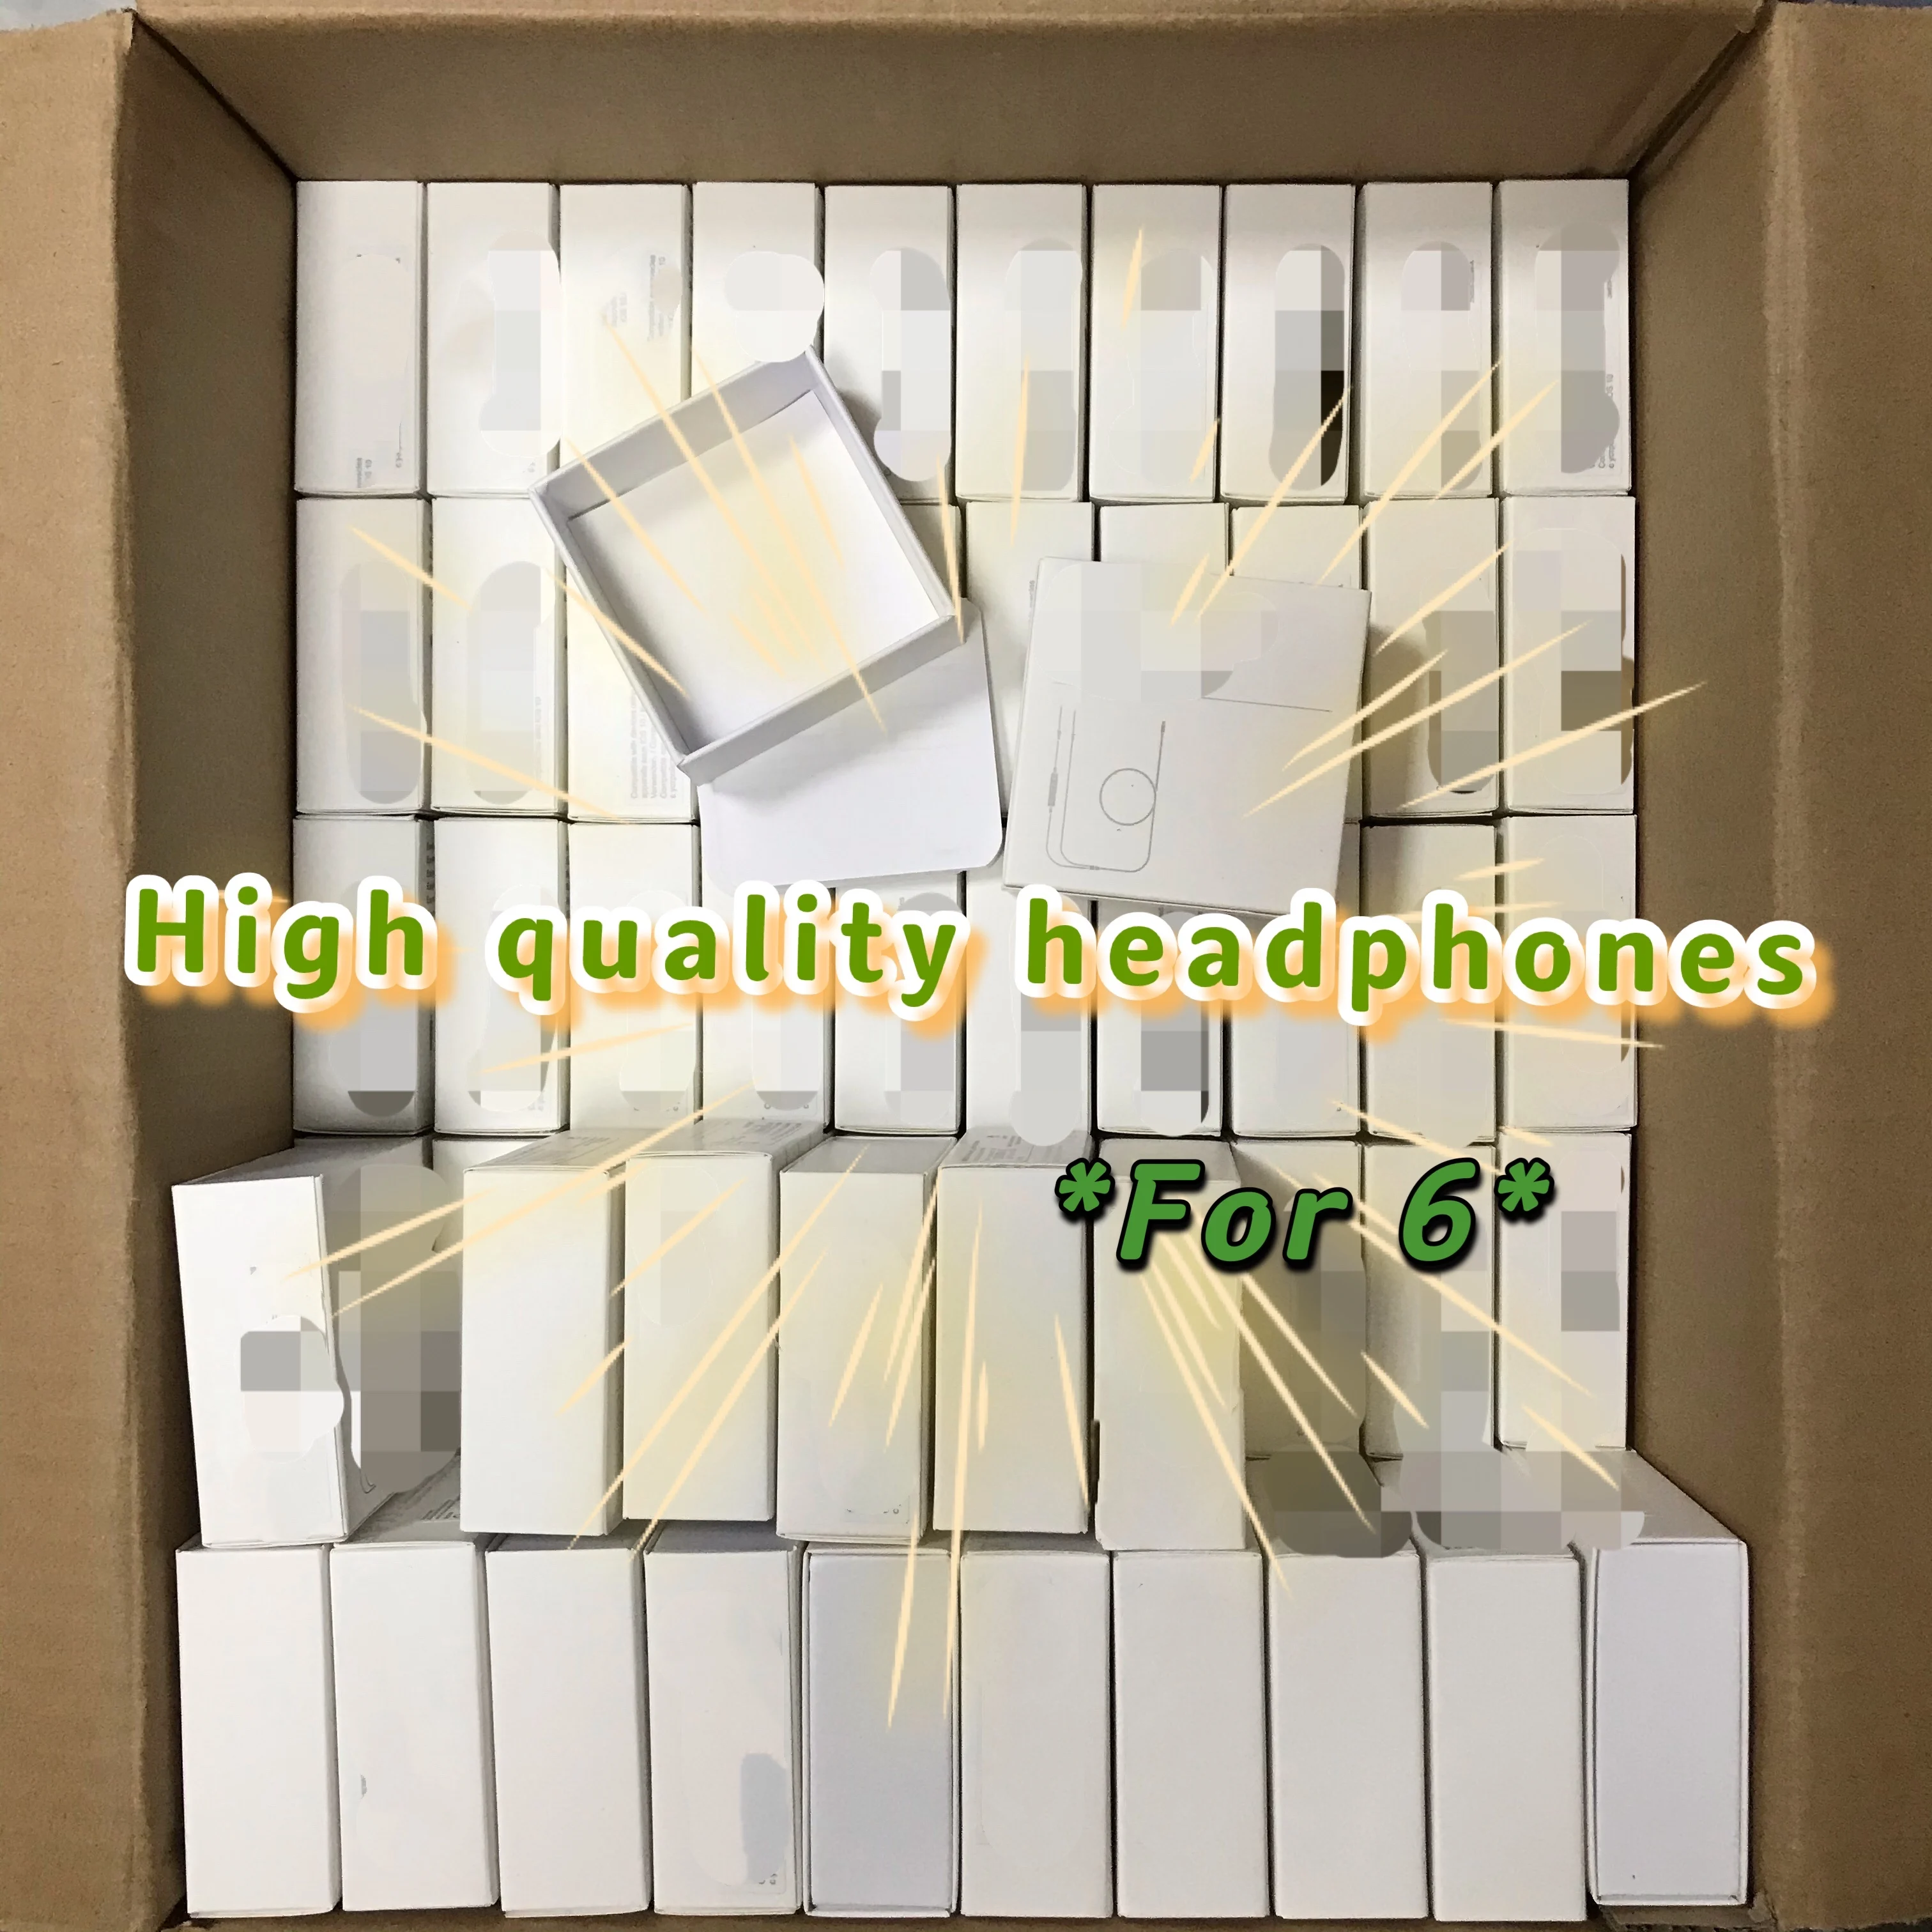 

10 шт./лот наушники-вкладыши высокого качества Foxconn Проводные 3,5 мм наушники с микрофоном для i 5S SE 6S Plus с зеленой этикеткой в упаковке